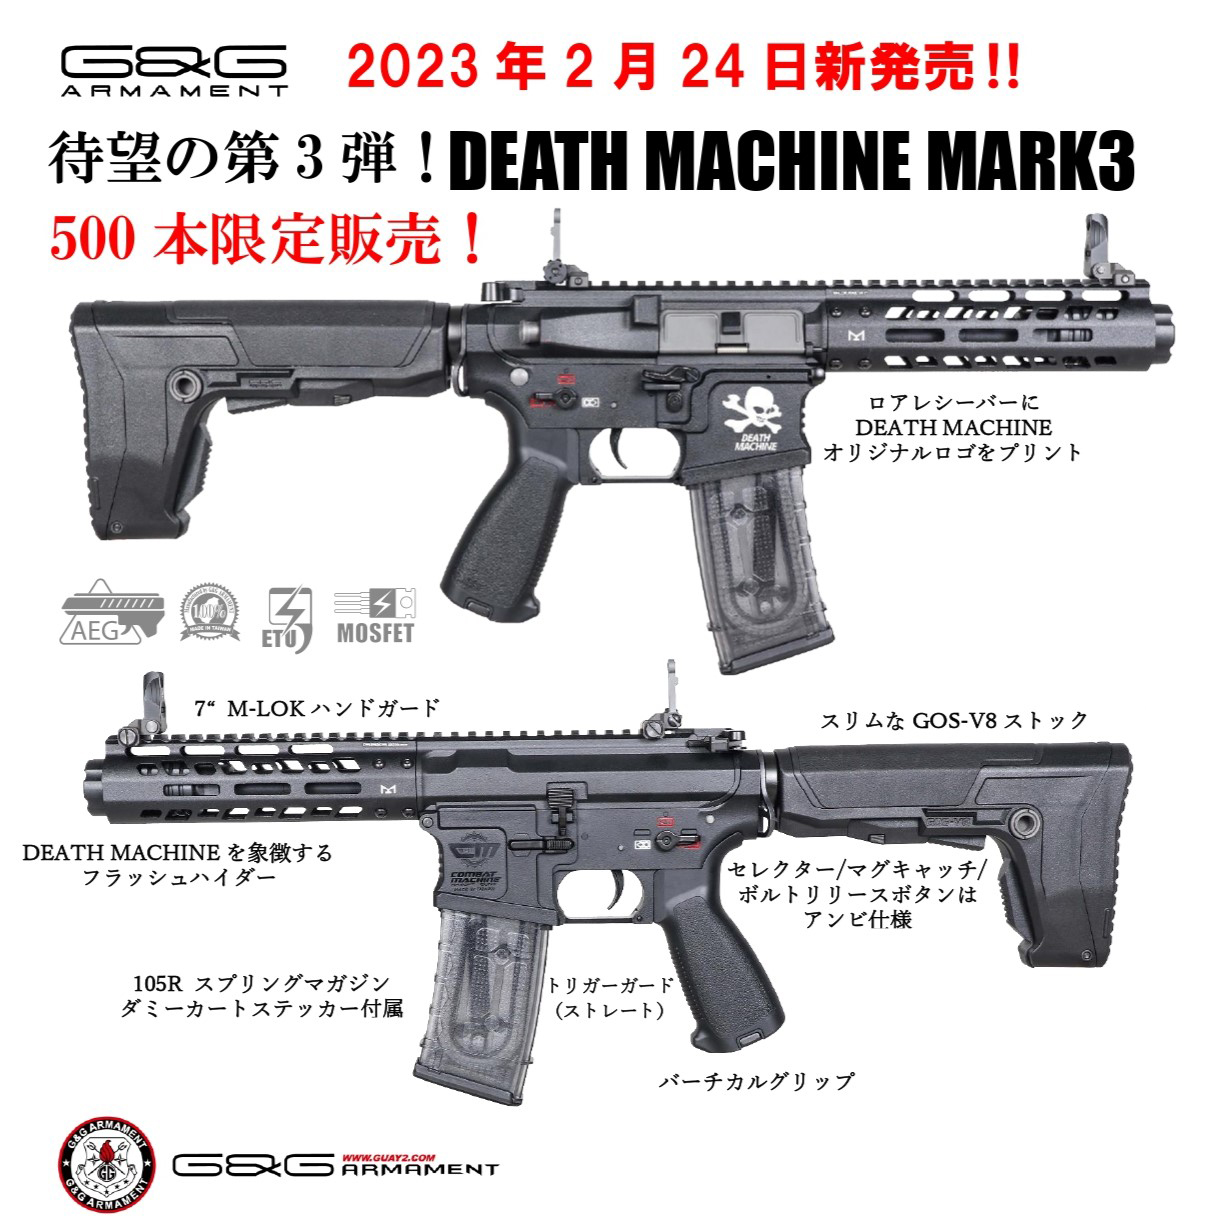 AIRSOFT97 沖縄本店 通販部 / G&G DEATH MACHINE MARK3【数量限定生産品】